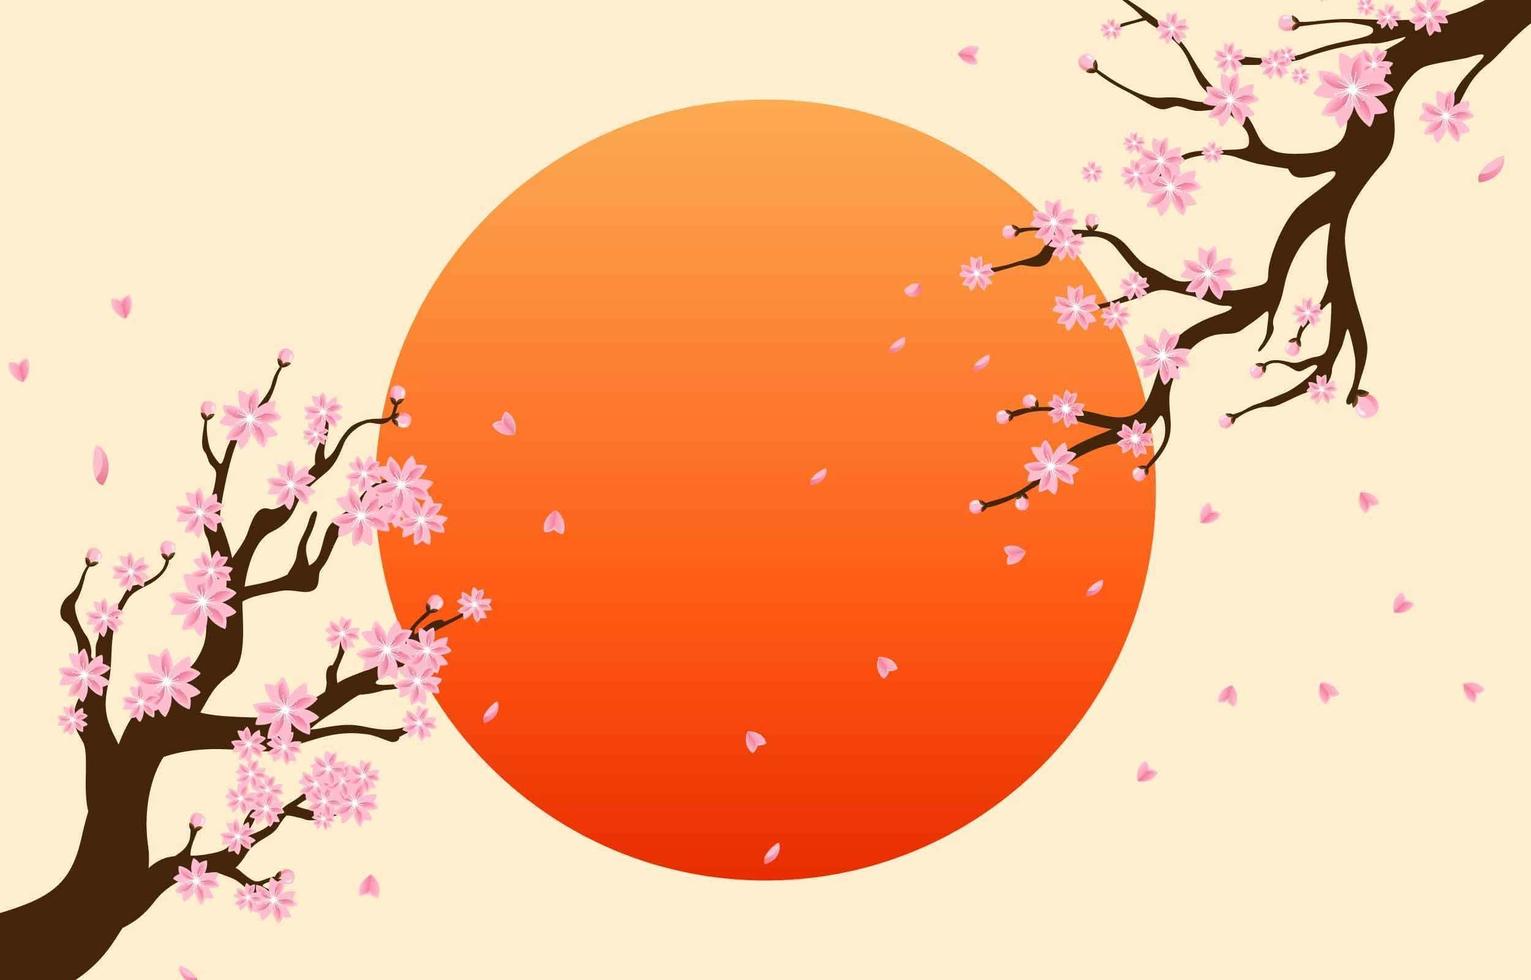 Kirschblüte mit rotem Kreis als Hintergrund vektor